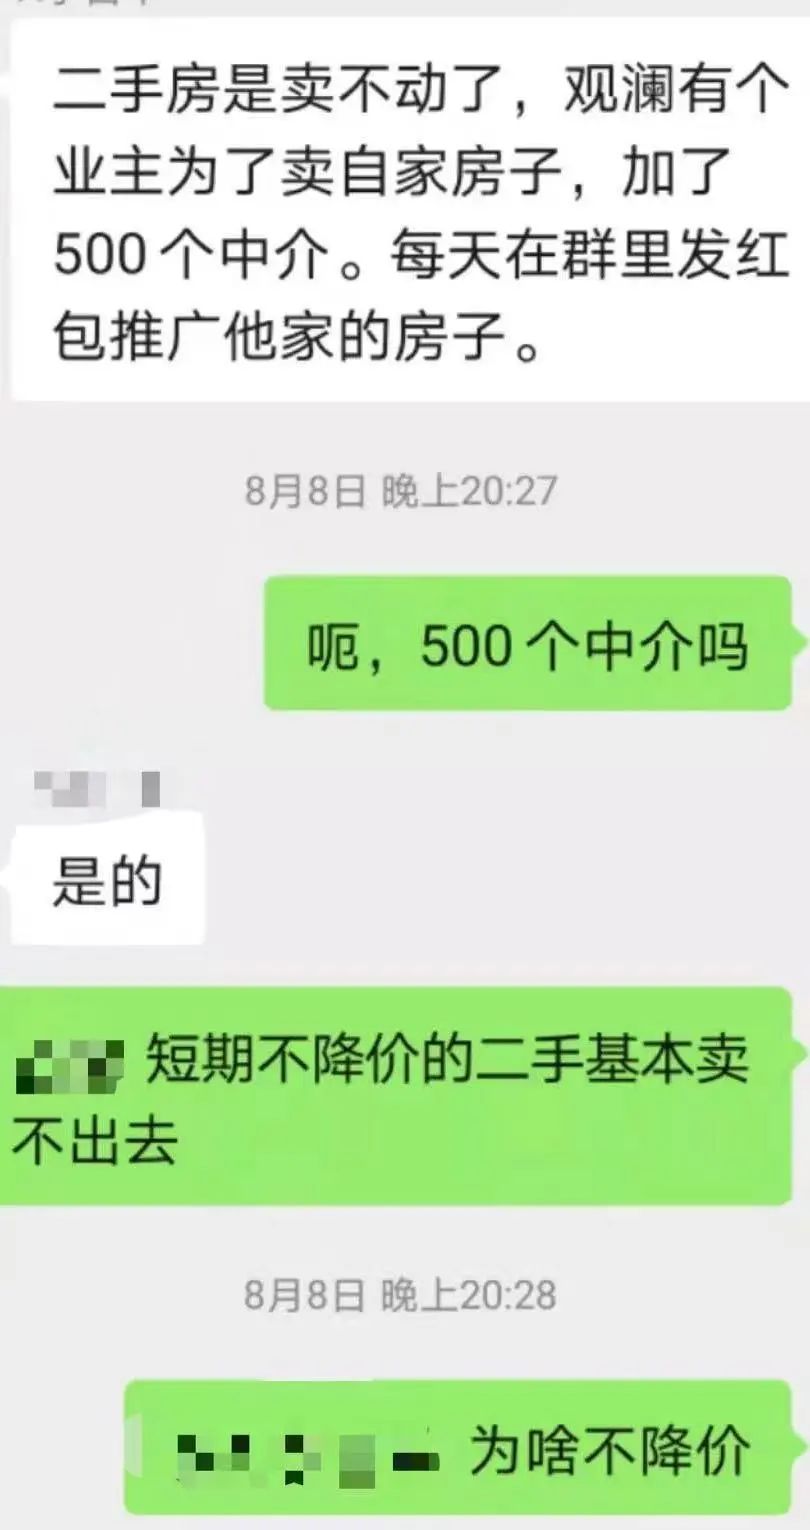 扛不住了！深圳顶级学区房32万降至10万！奇葩业主为卖房 拉500人中介群